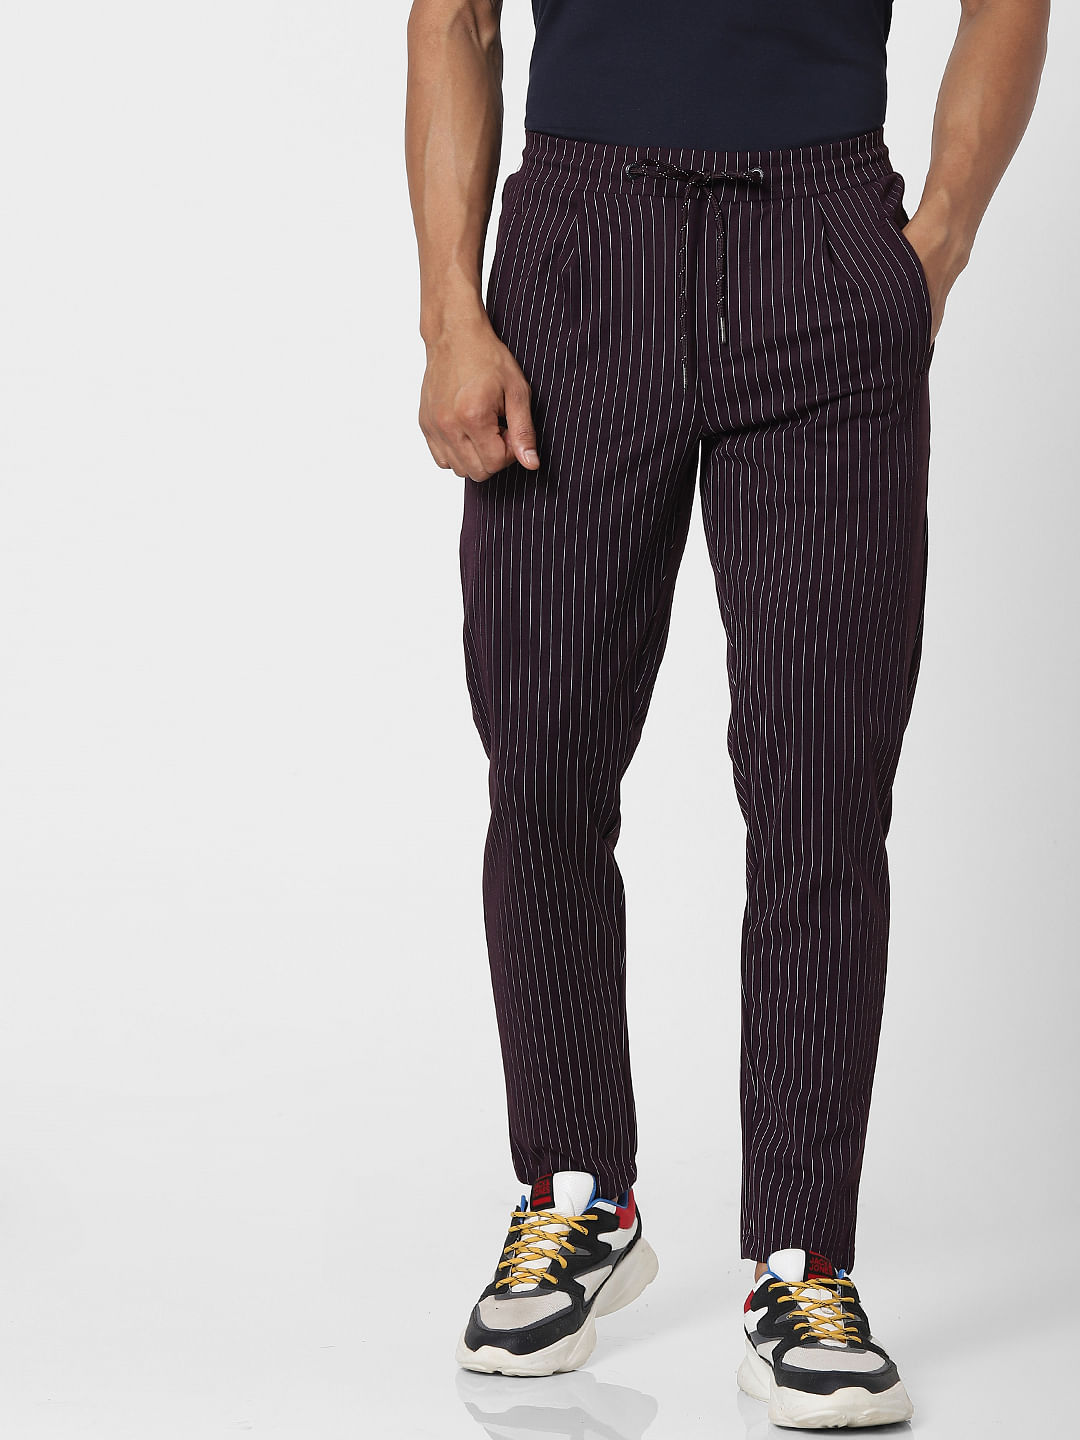 Buy Mens Black Striped Casual Pants for Men Online at Bewakoof